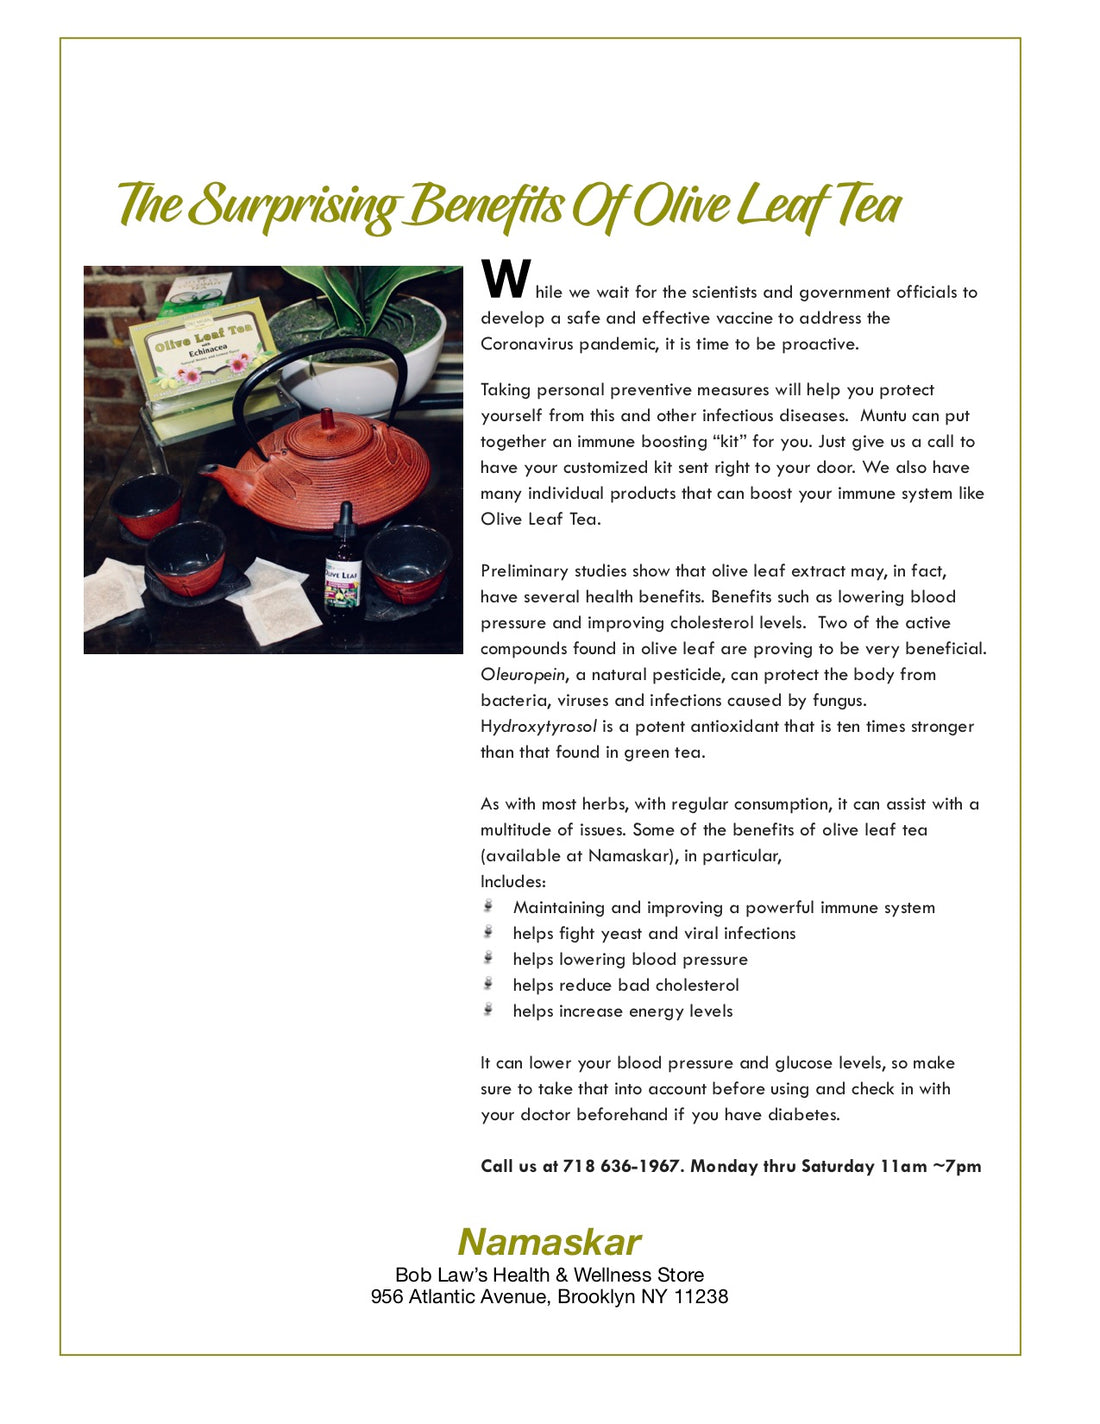 Surprising Benefits of Olive Leaf Tea